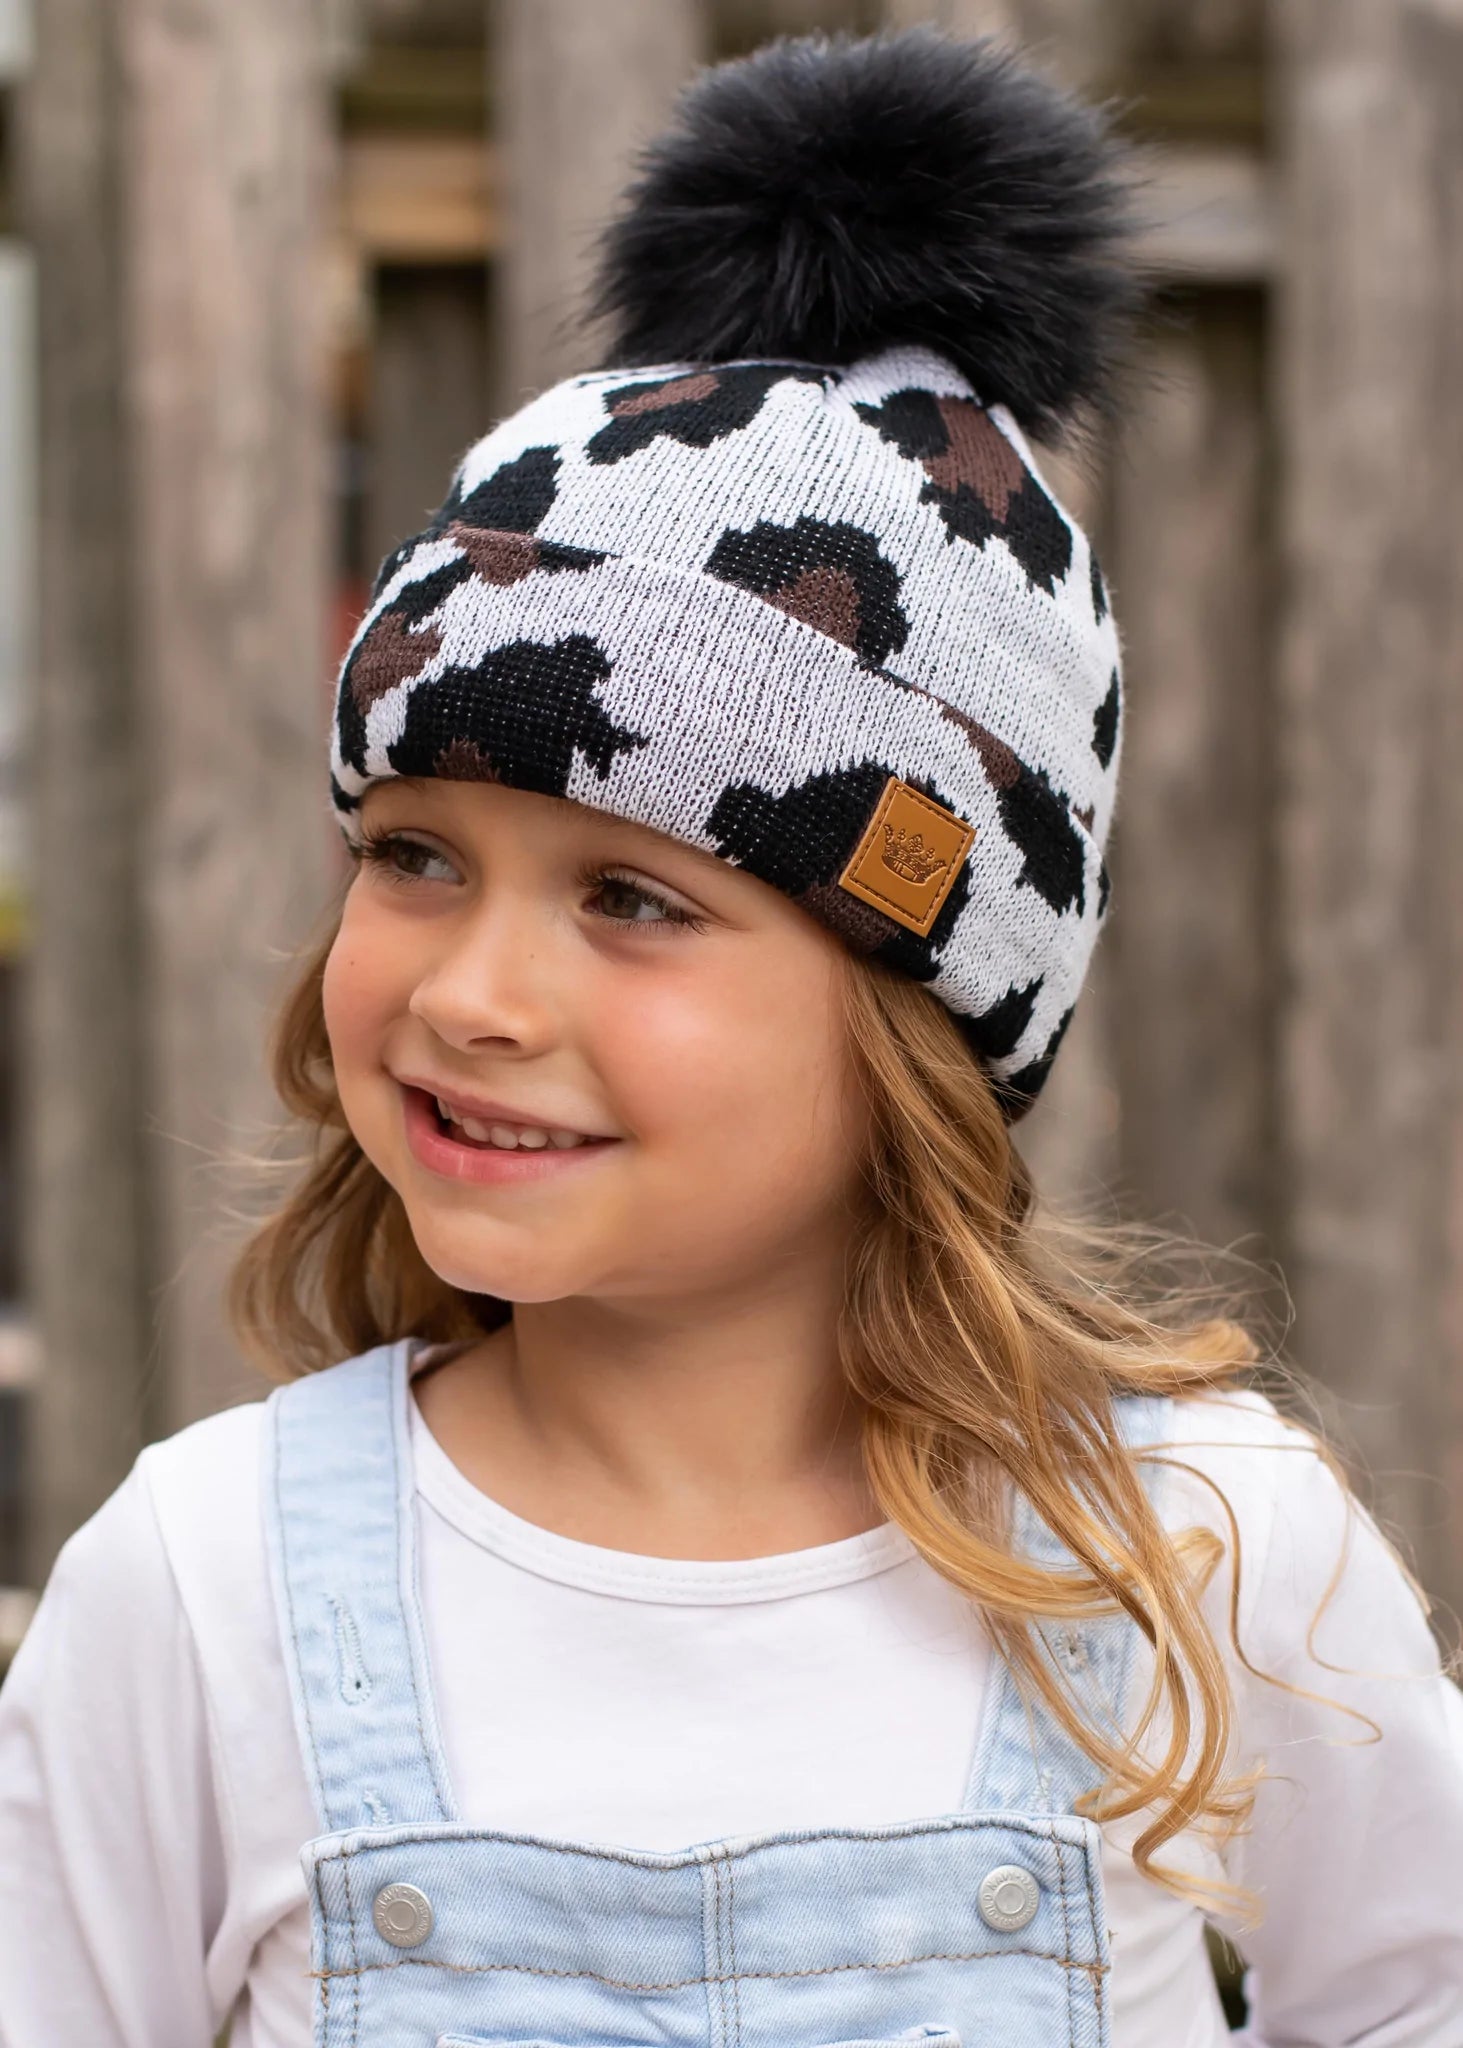 Kids white leopard knit hat Black faux fur pom accent